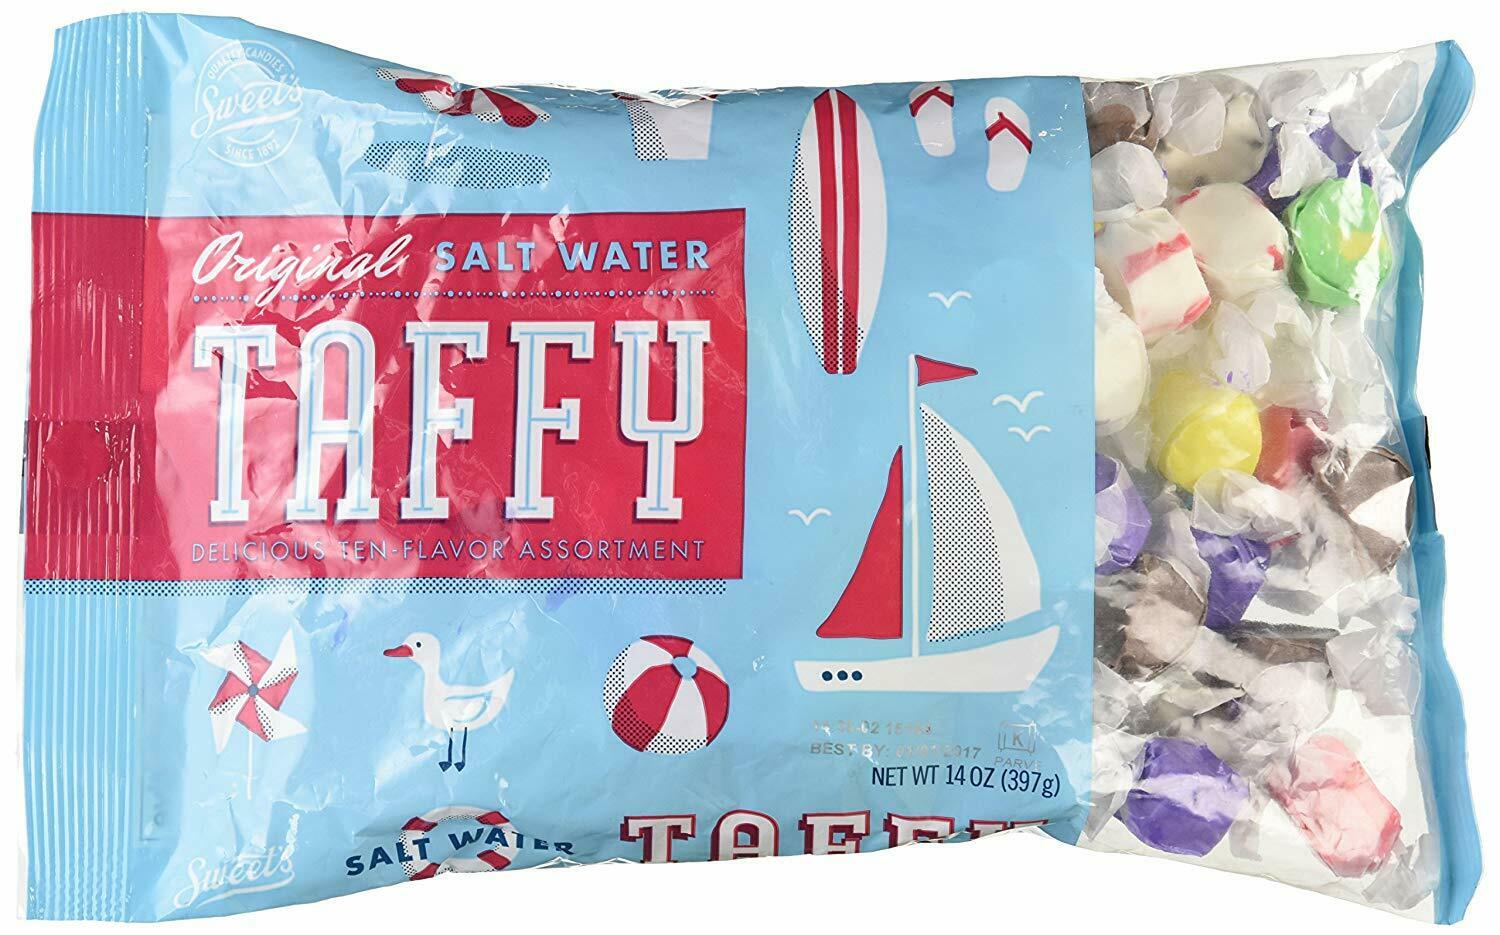 Sweet's Candy Original Salt Water Taffy Assortment, 14oz